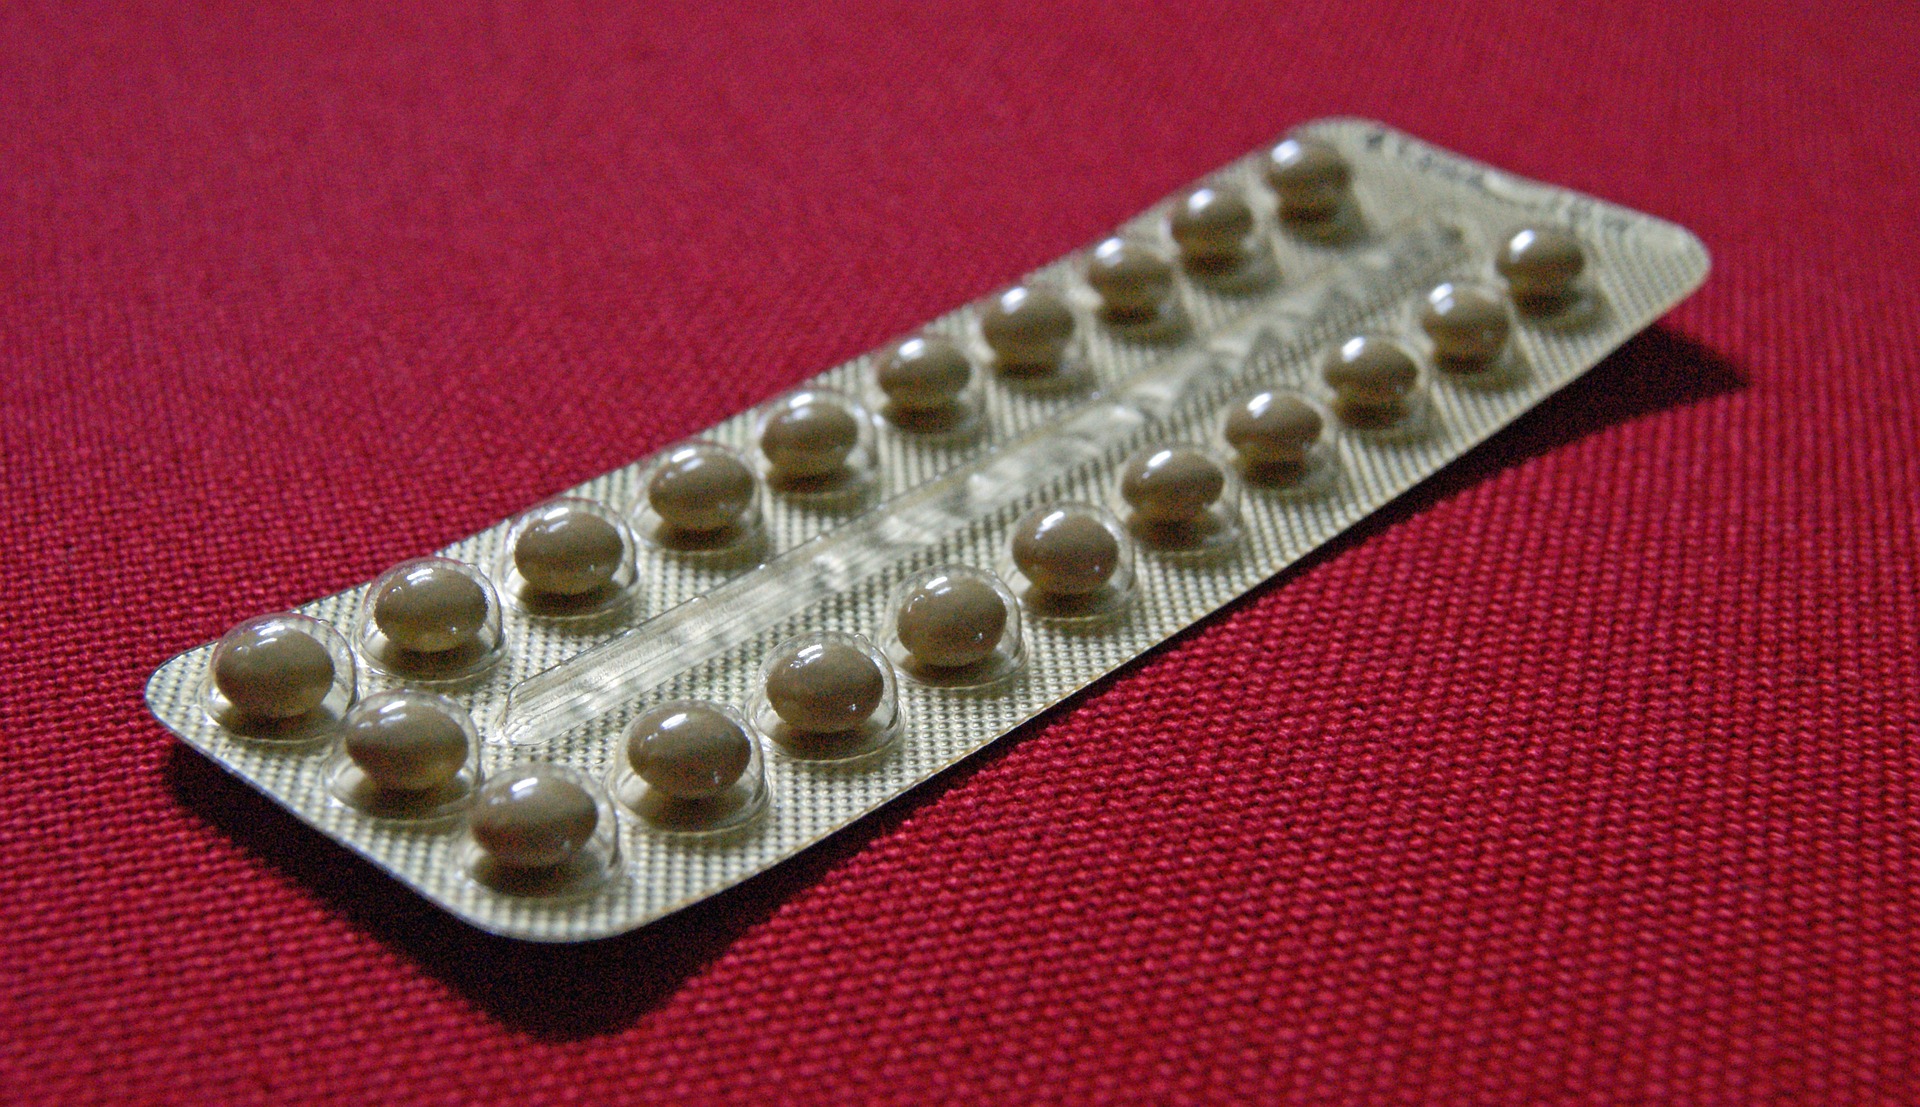 contraceptive-pills-g2fa770473_1920.jpg